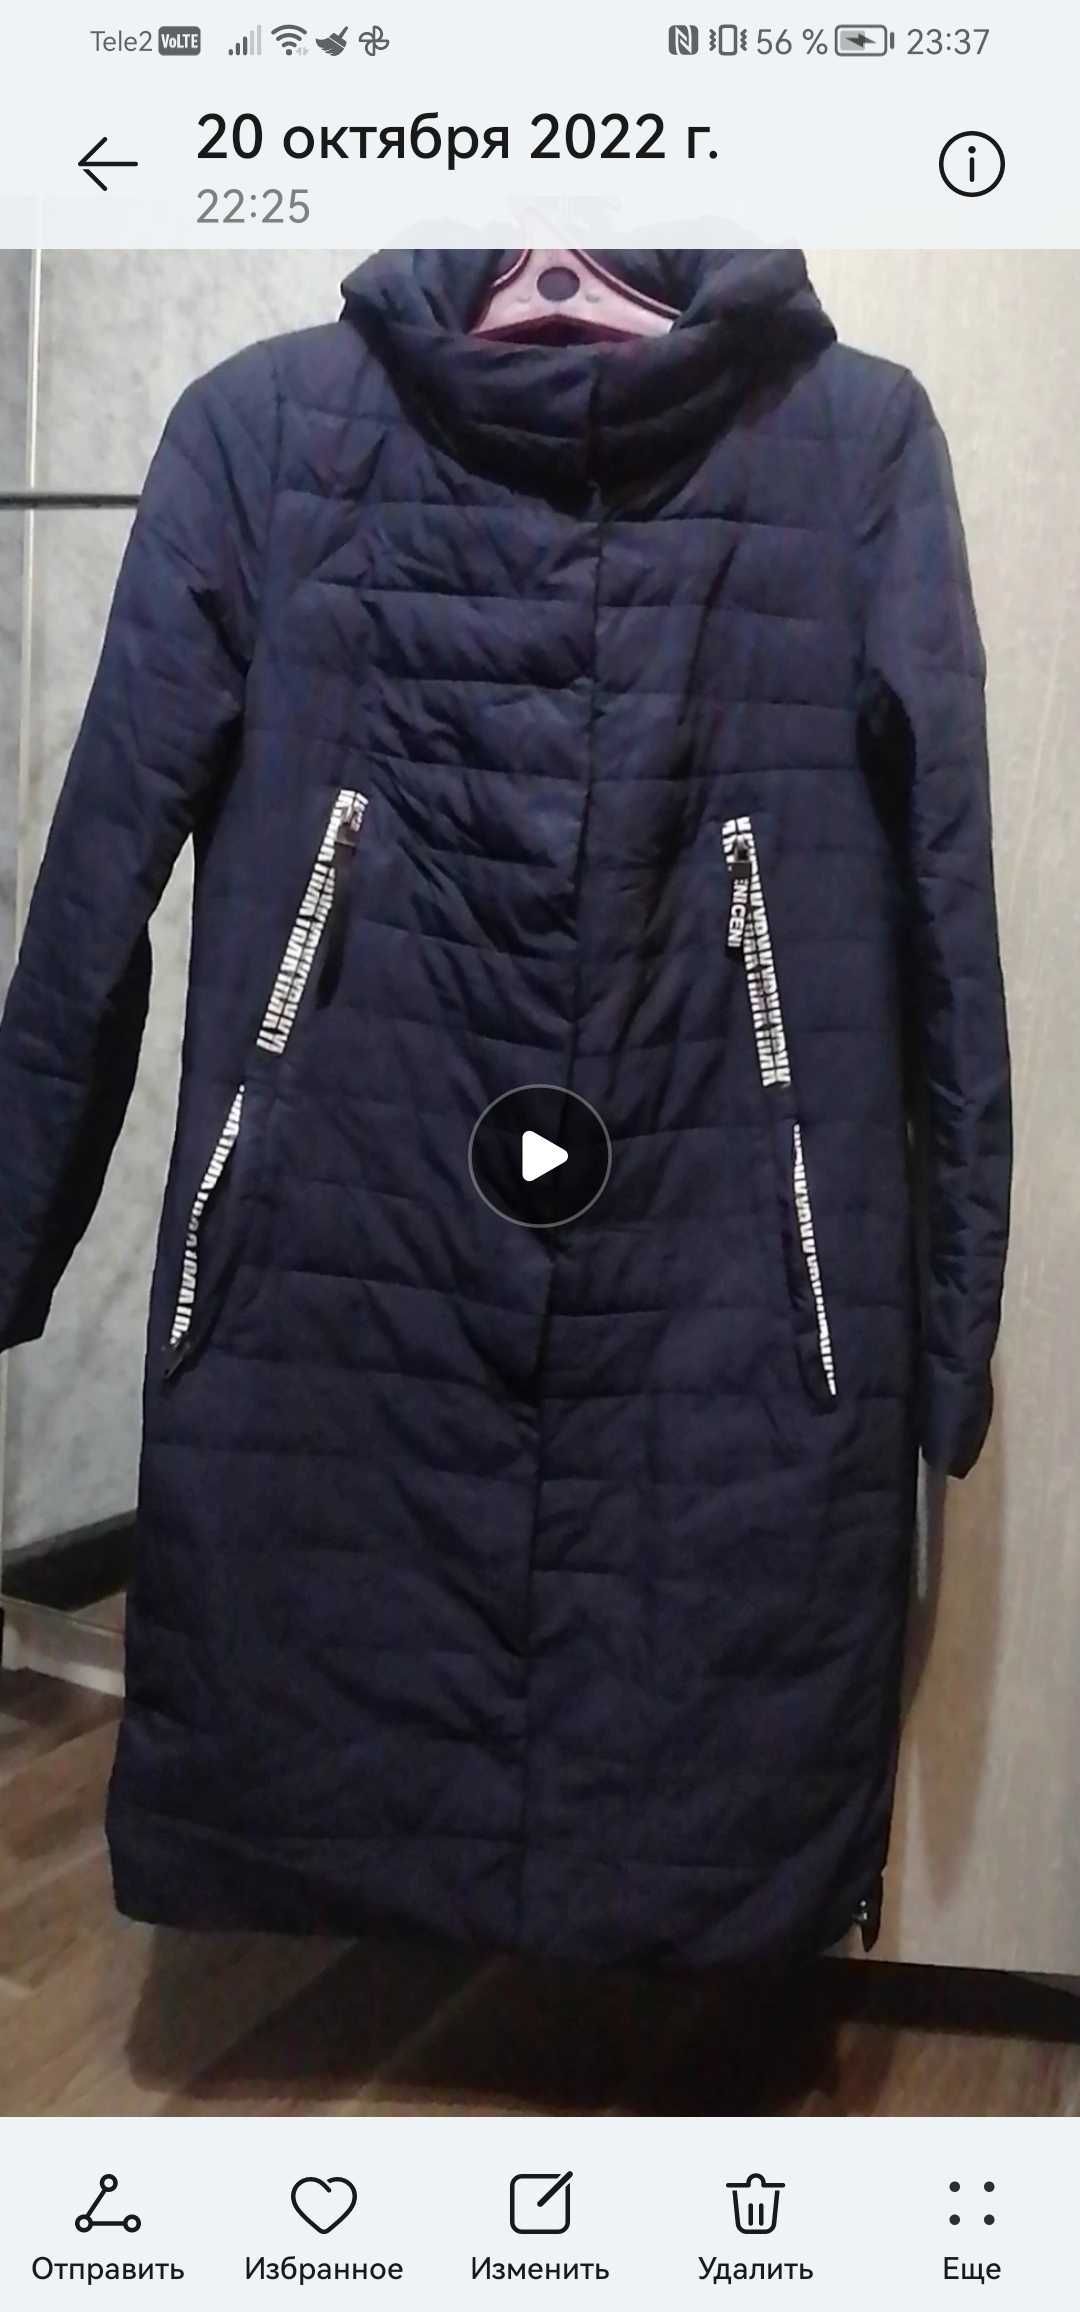 Продам осеннюю женскую куртку